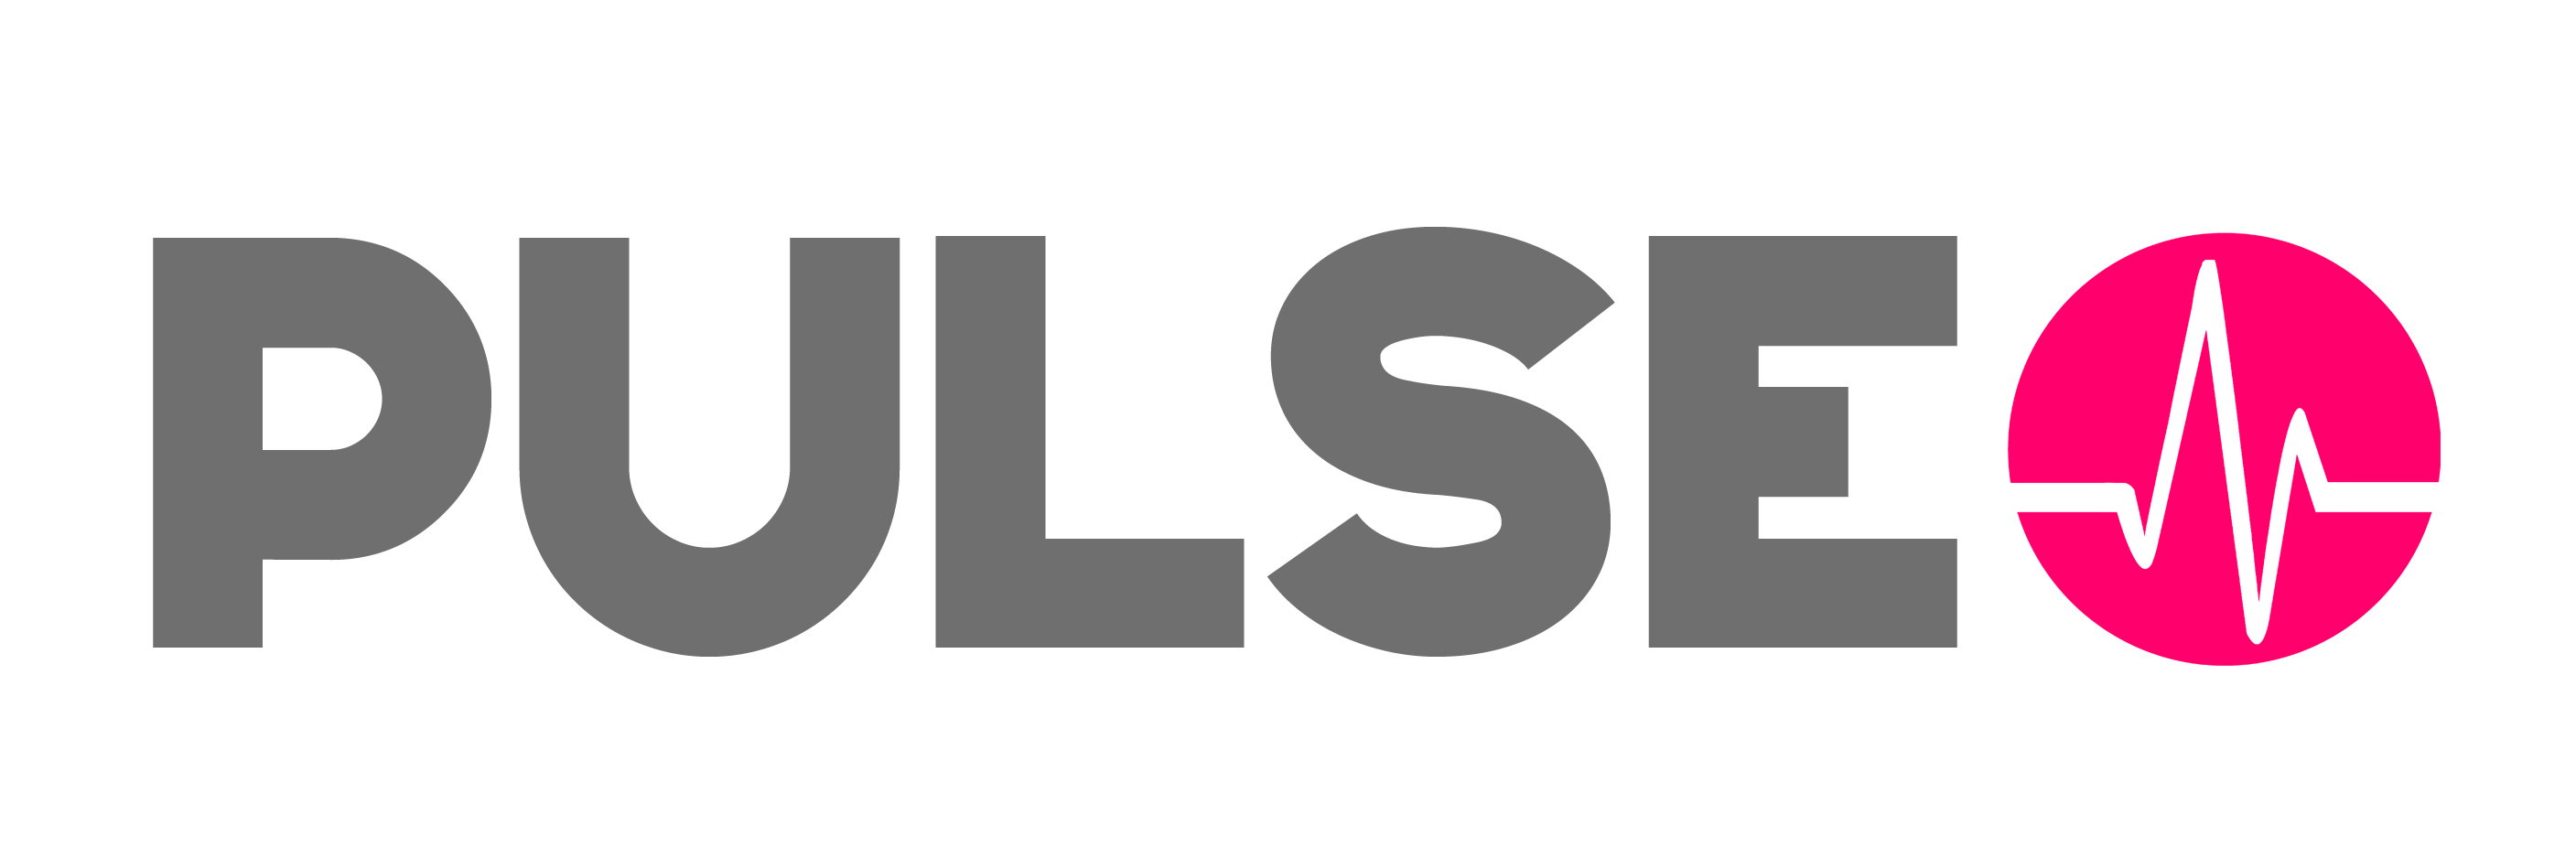 pulse_logo_wtb